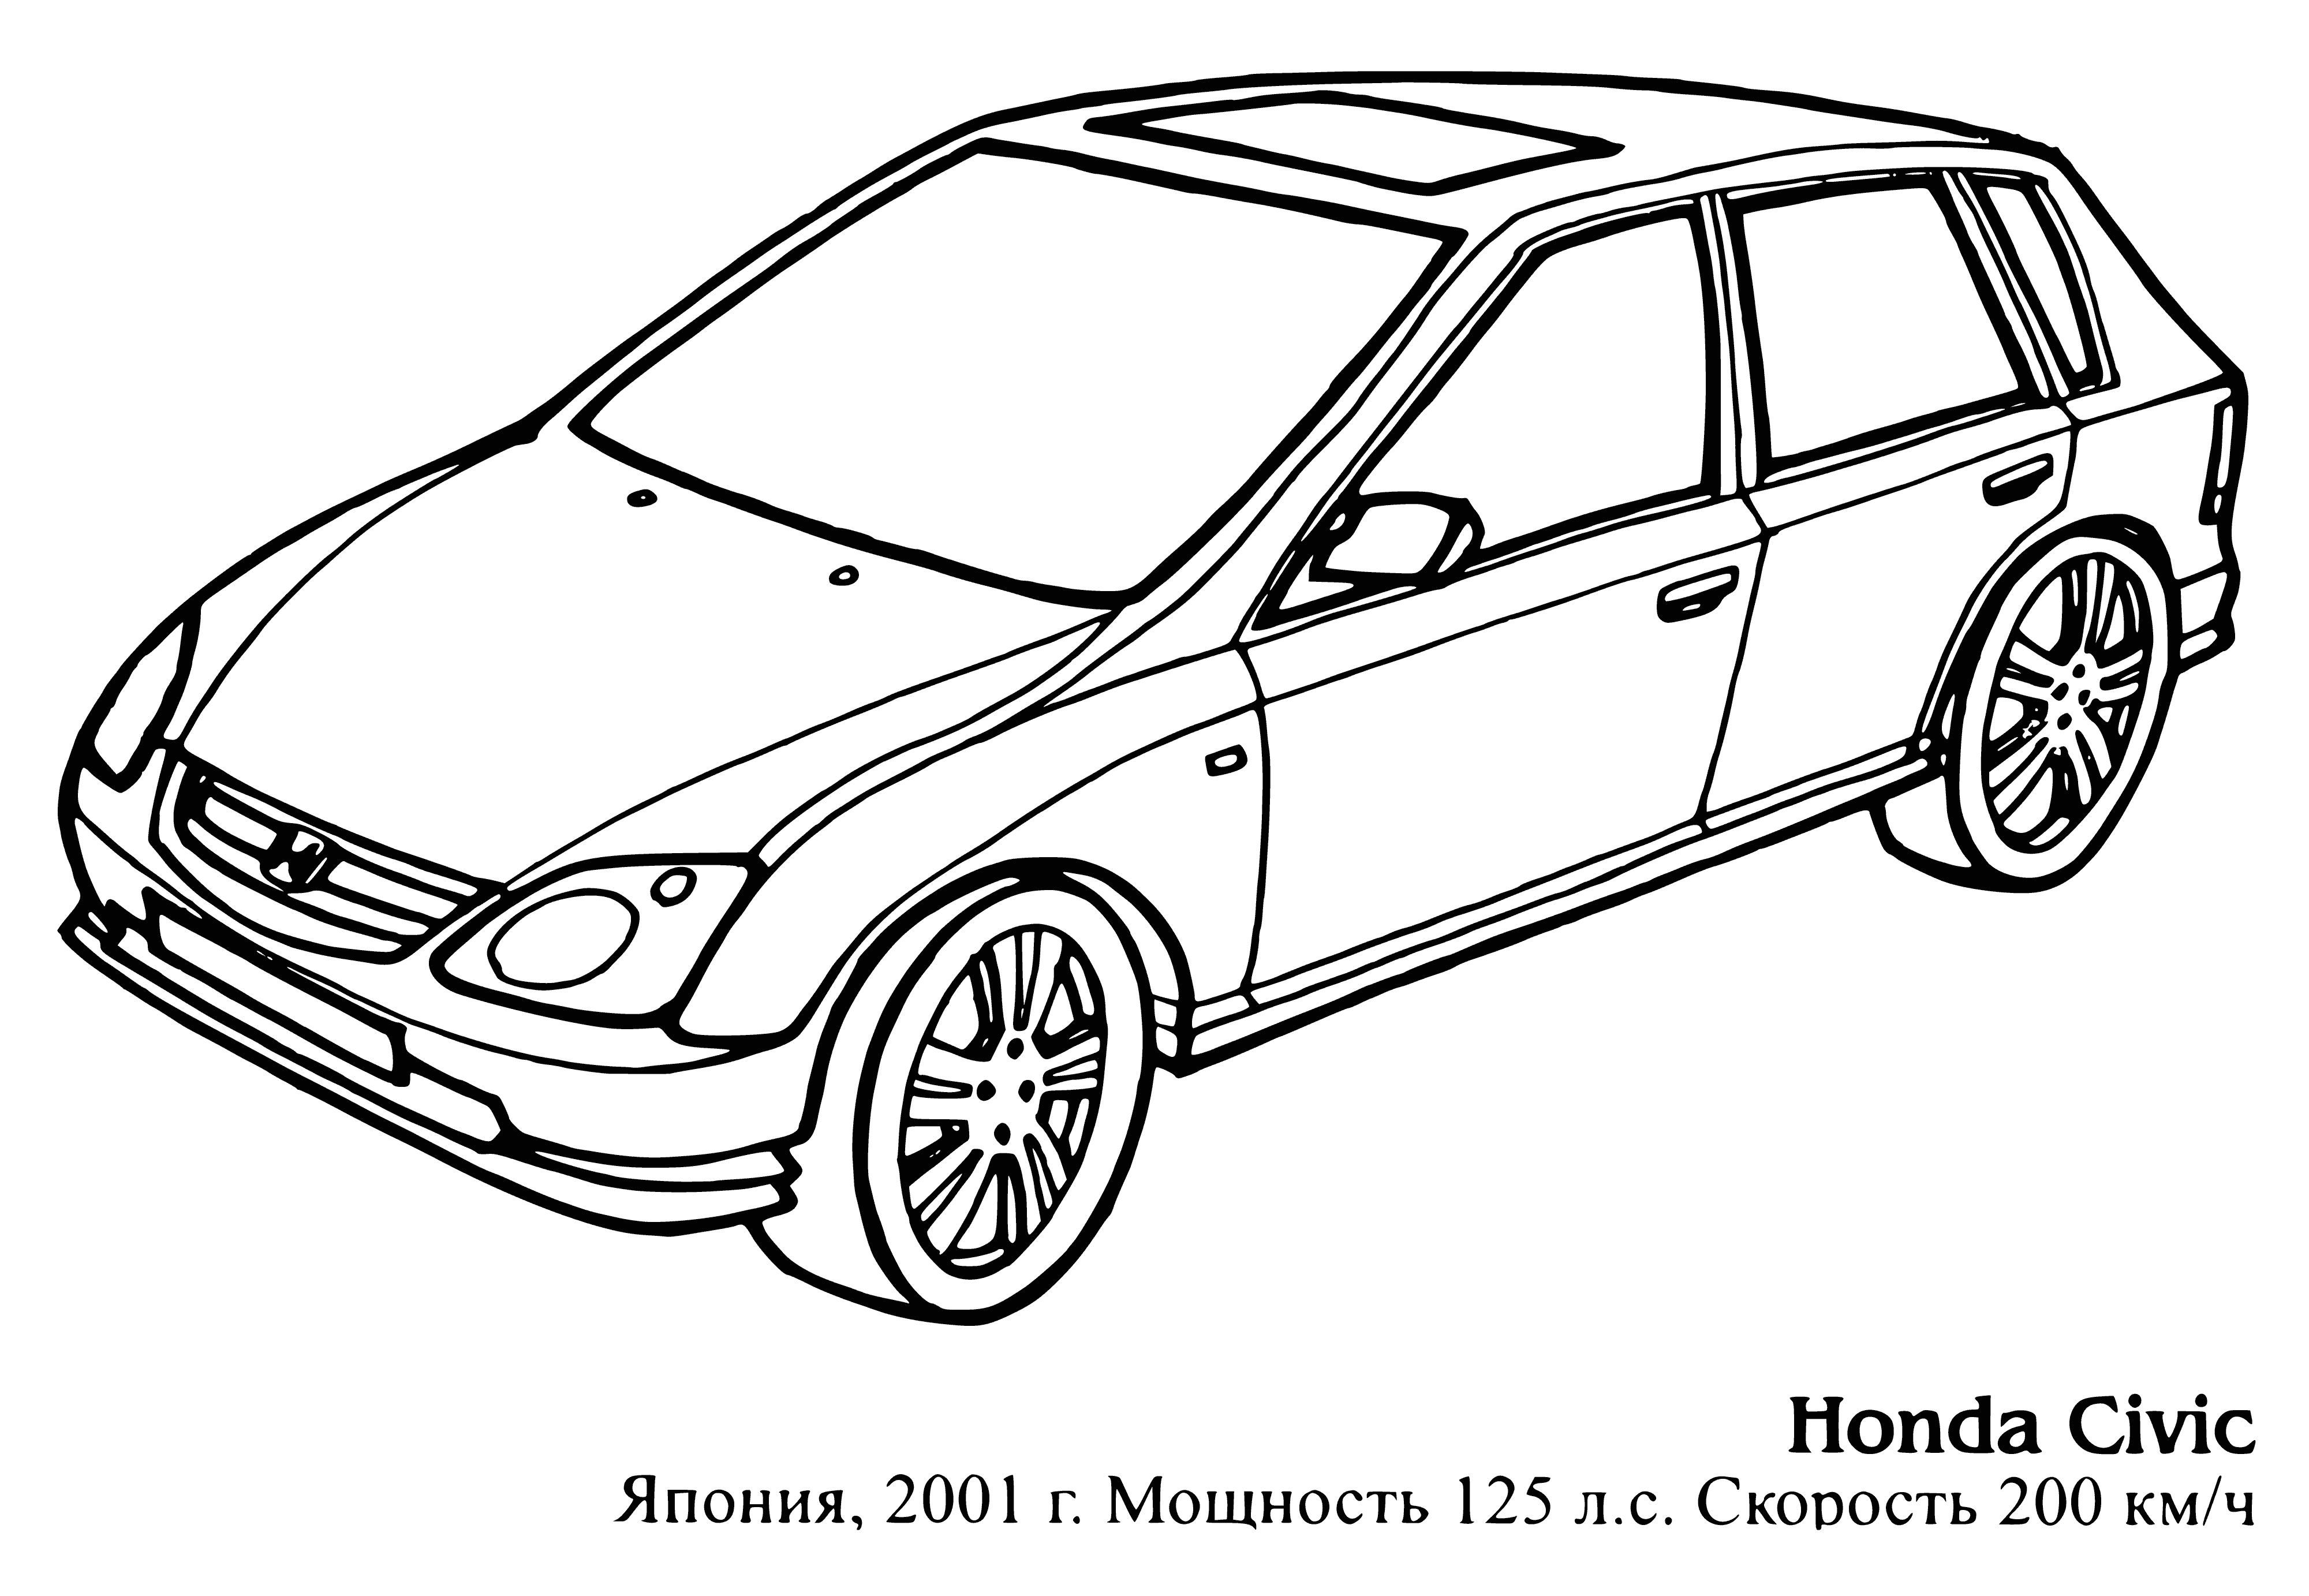 Honda Civic coloring page